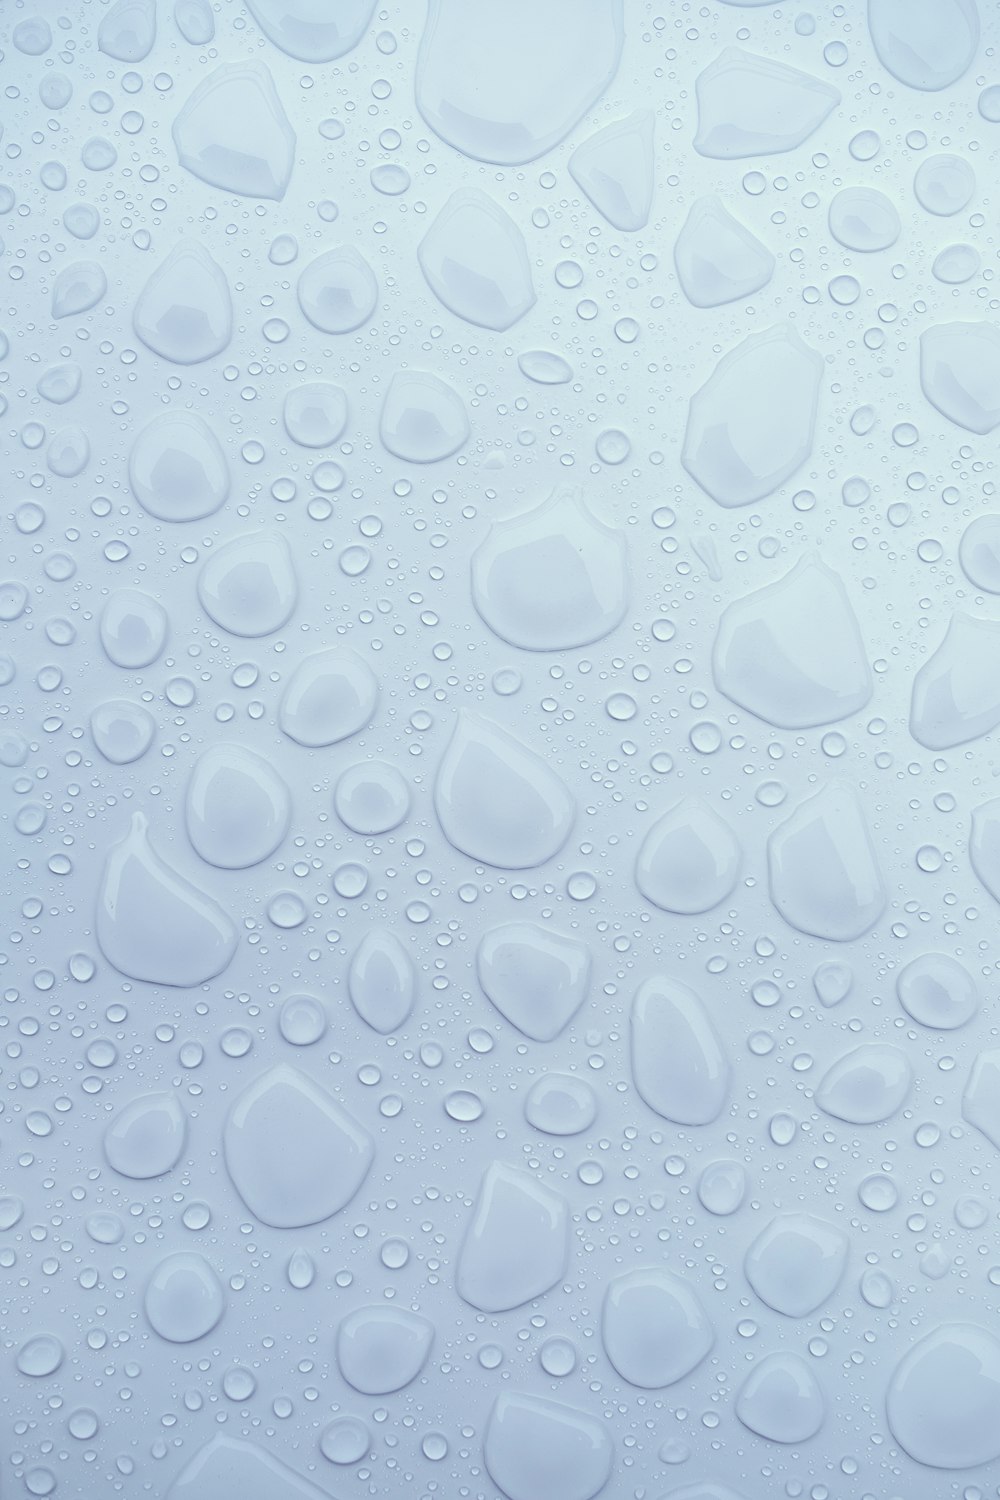 gotas de água em uma superfície branca